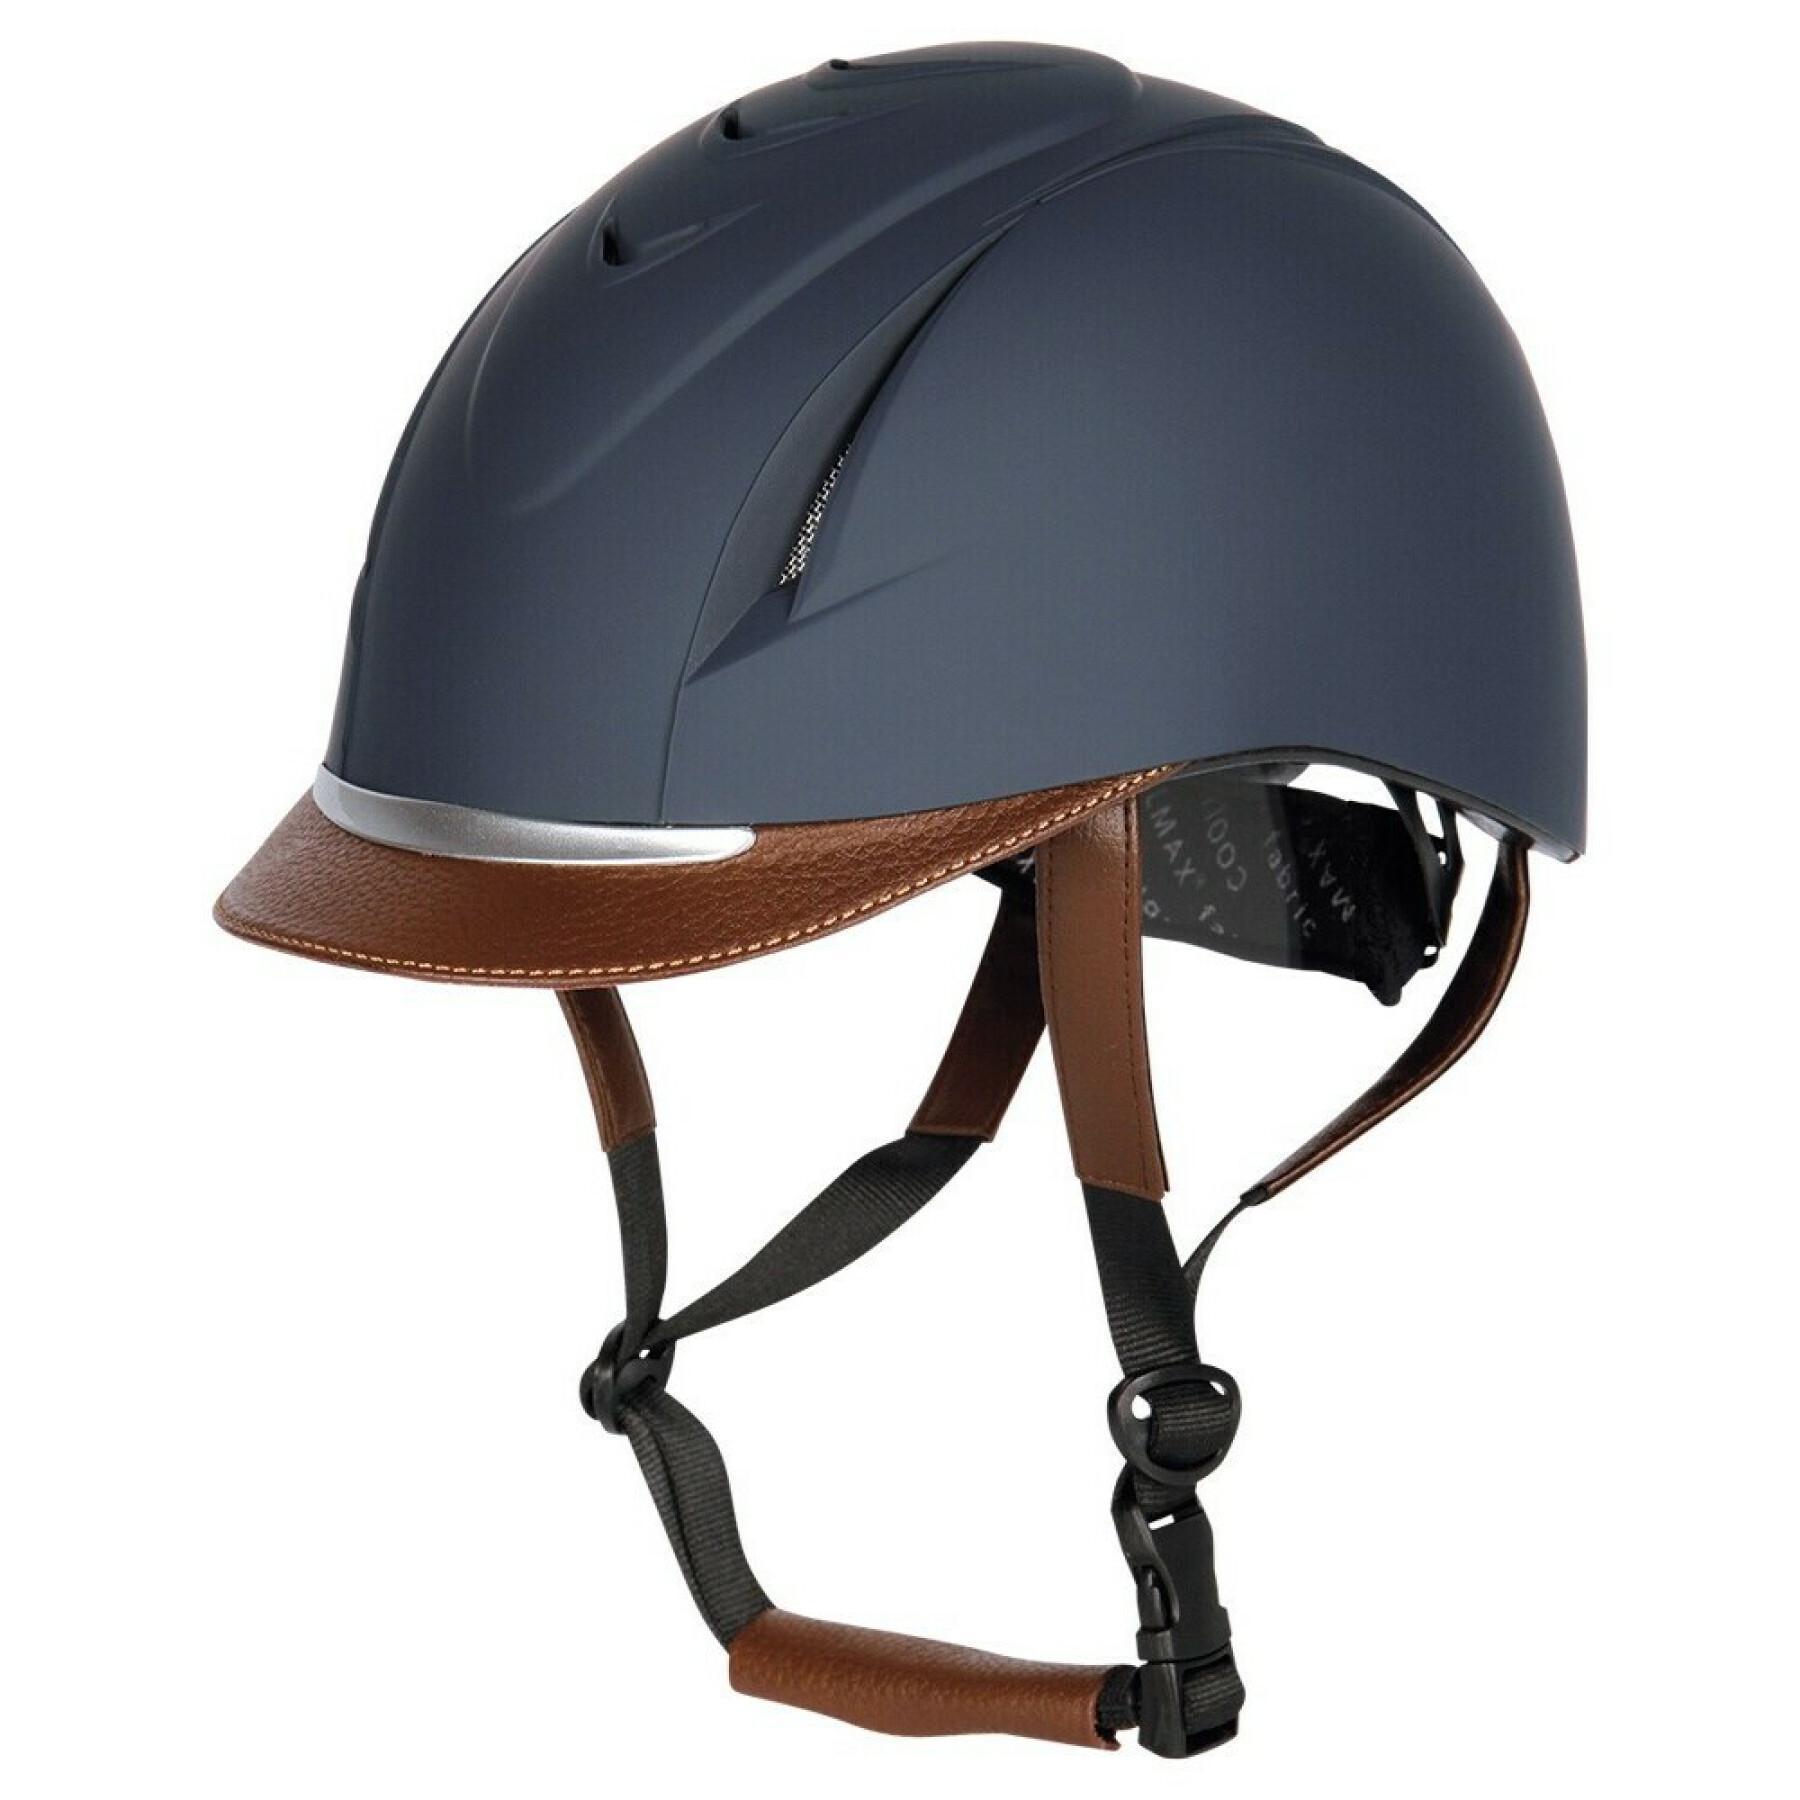 Harry's Horse Challenge helmet